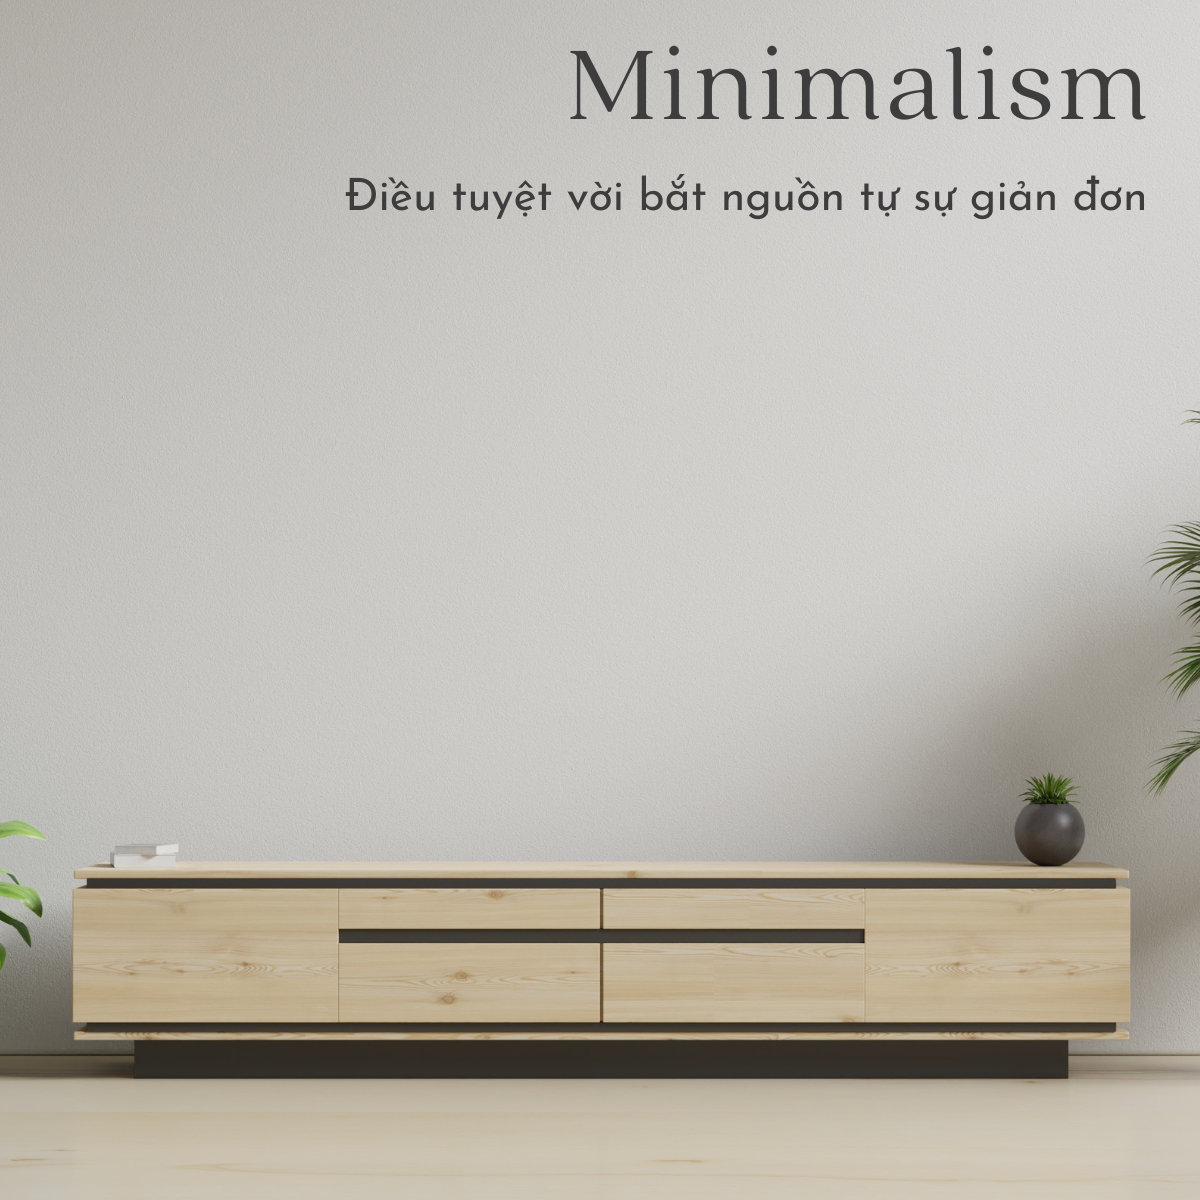 Minimalism - Điều tuyệt vời bắt nguồn từ sự giản đơn